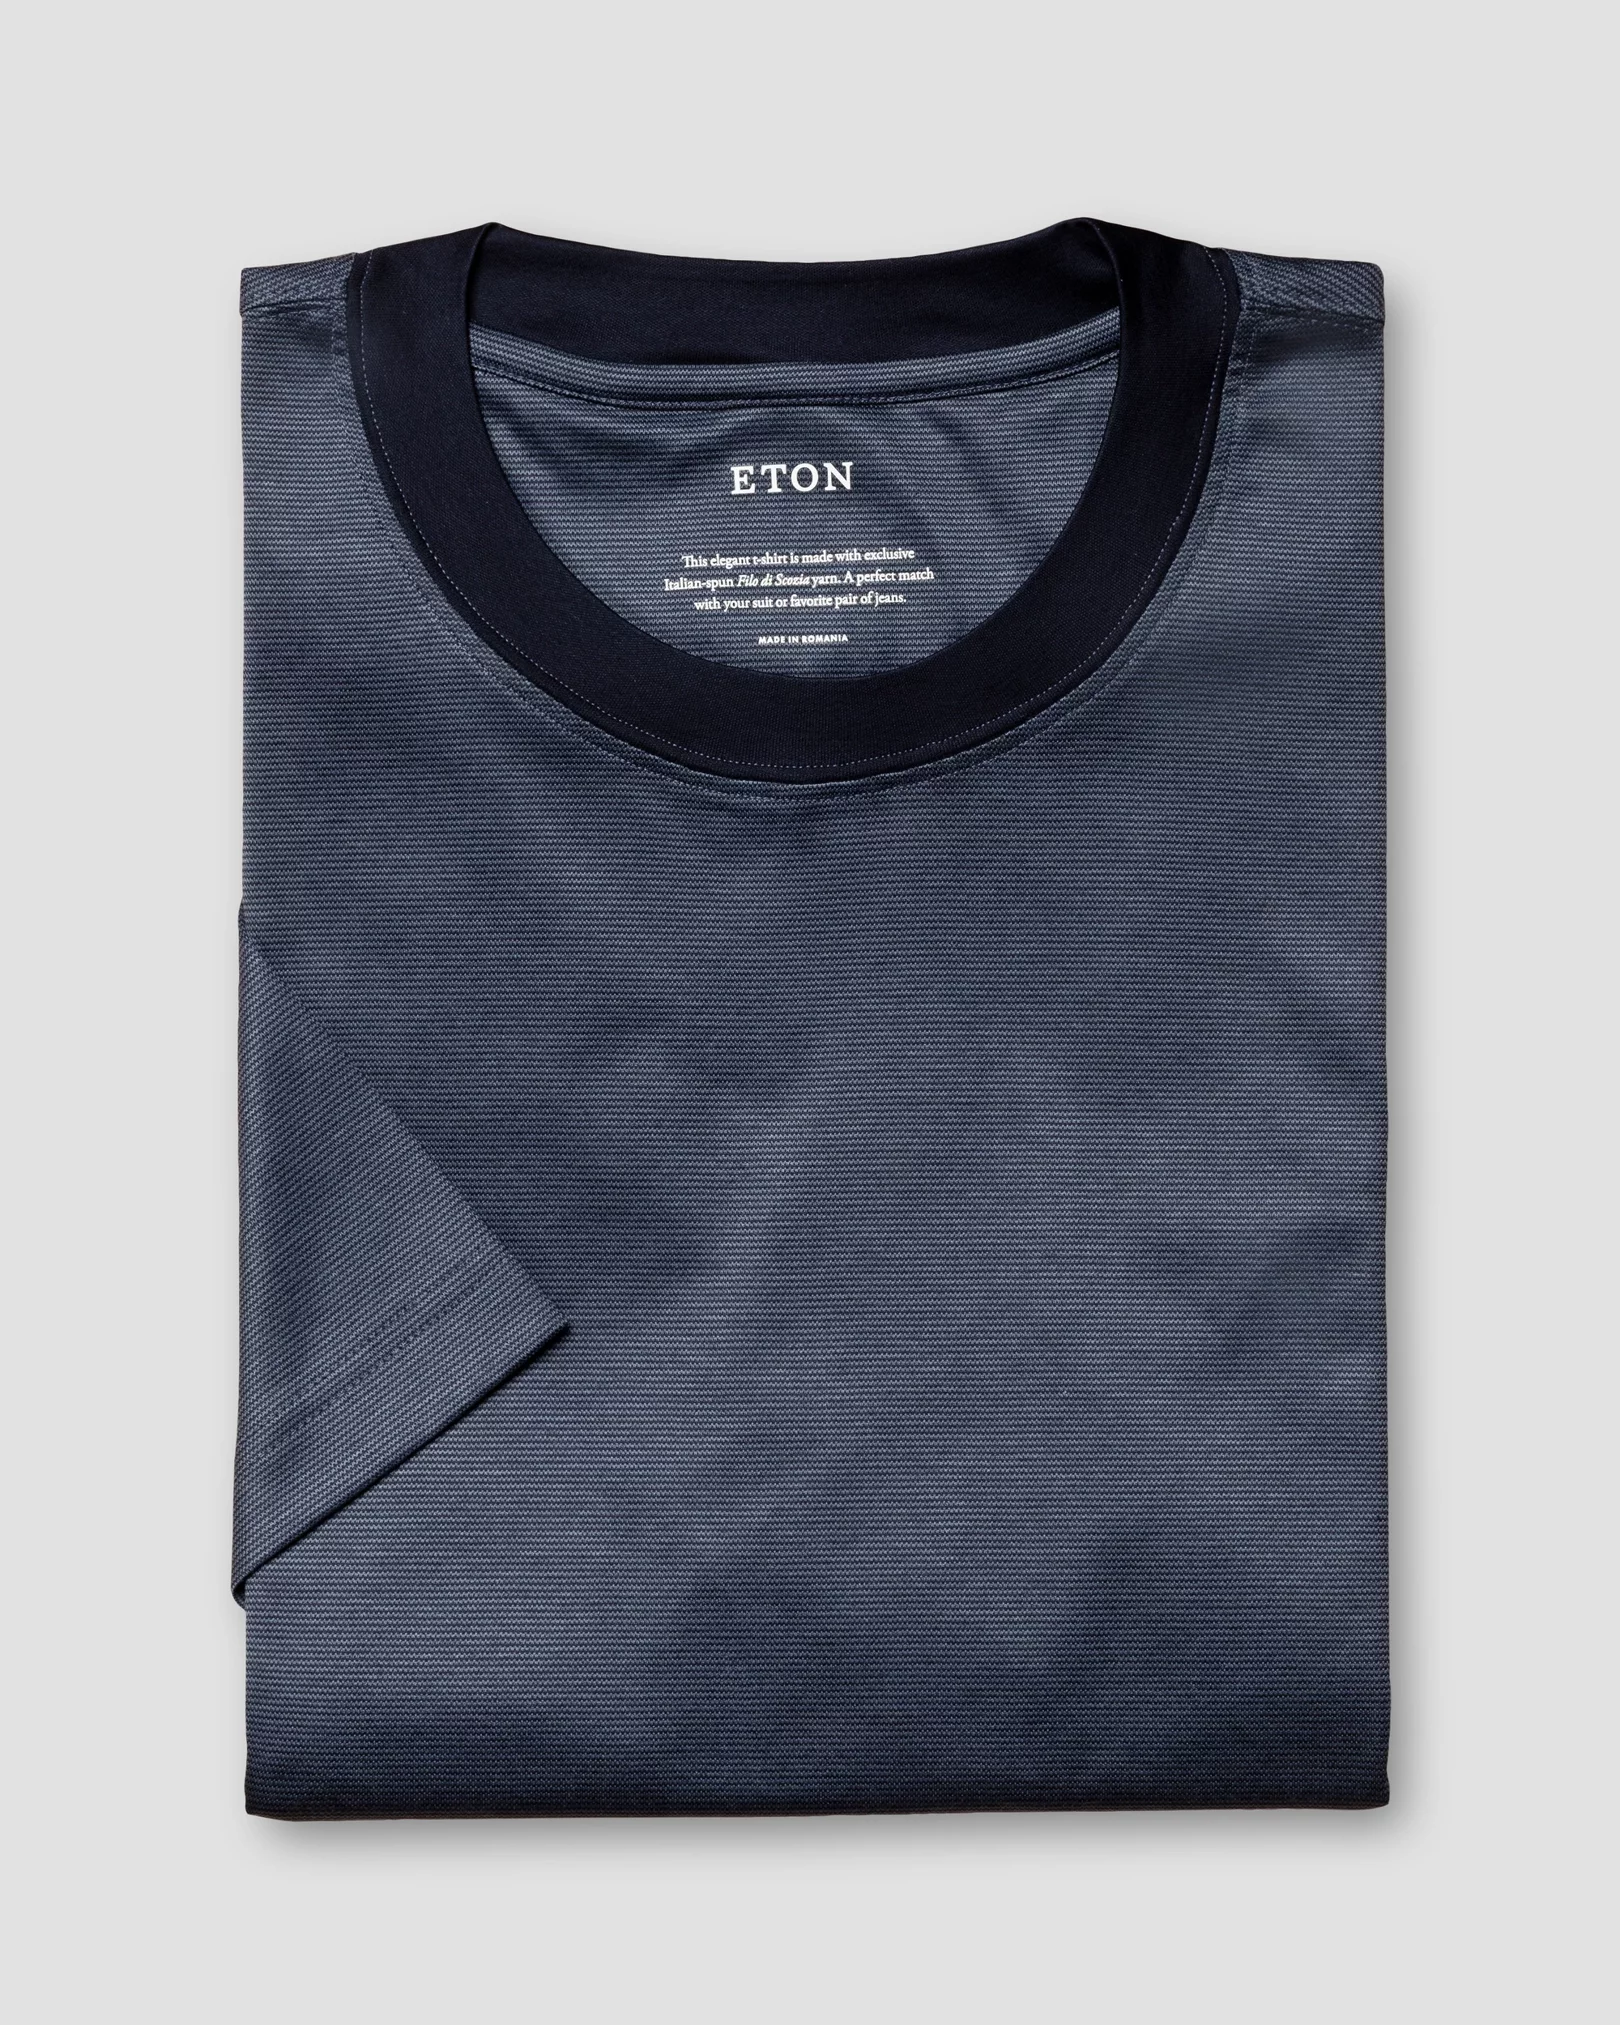 Eton - navy blue interlock jersey t shirt short sleeve t shirt t shirt